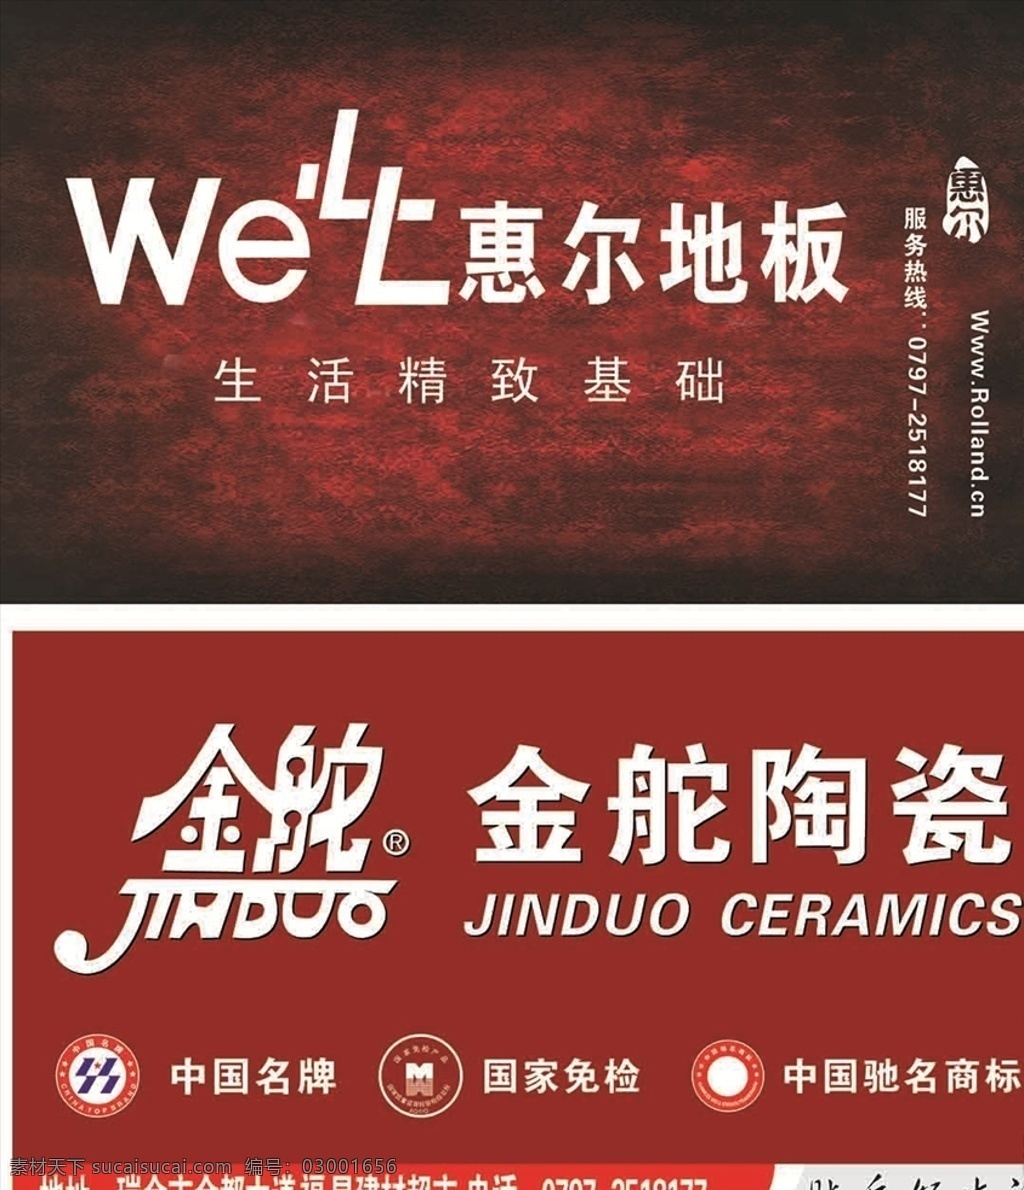 惠尔地板 金舵陶瓷 名片 国家免检标志 中国名牌 名片卡片